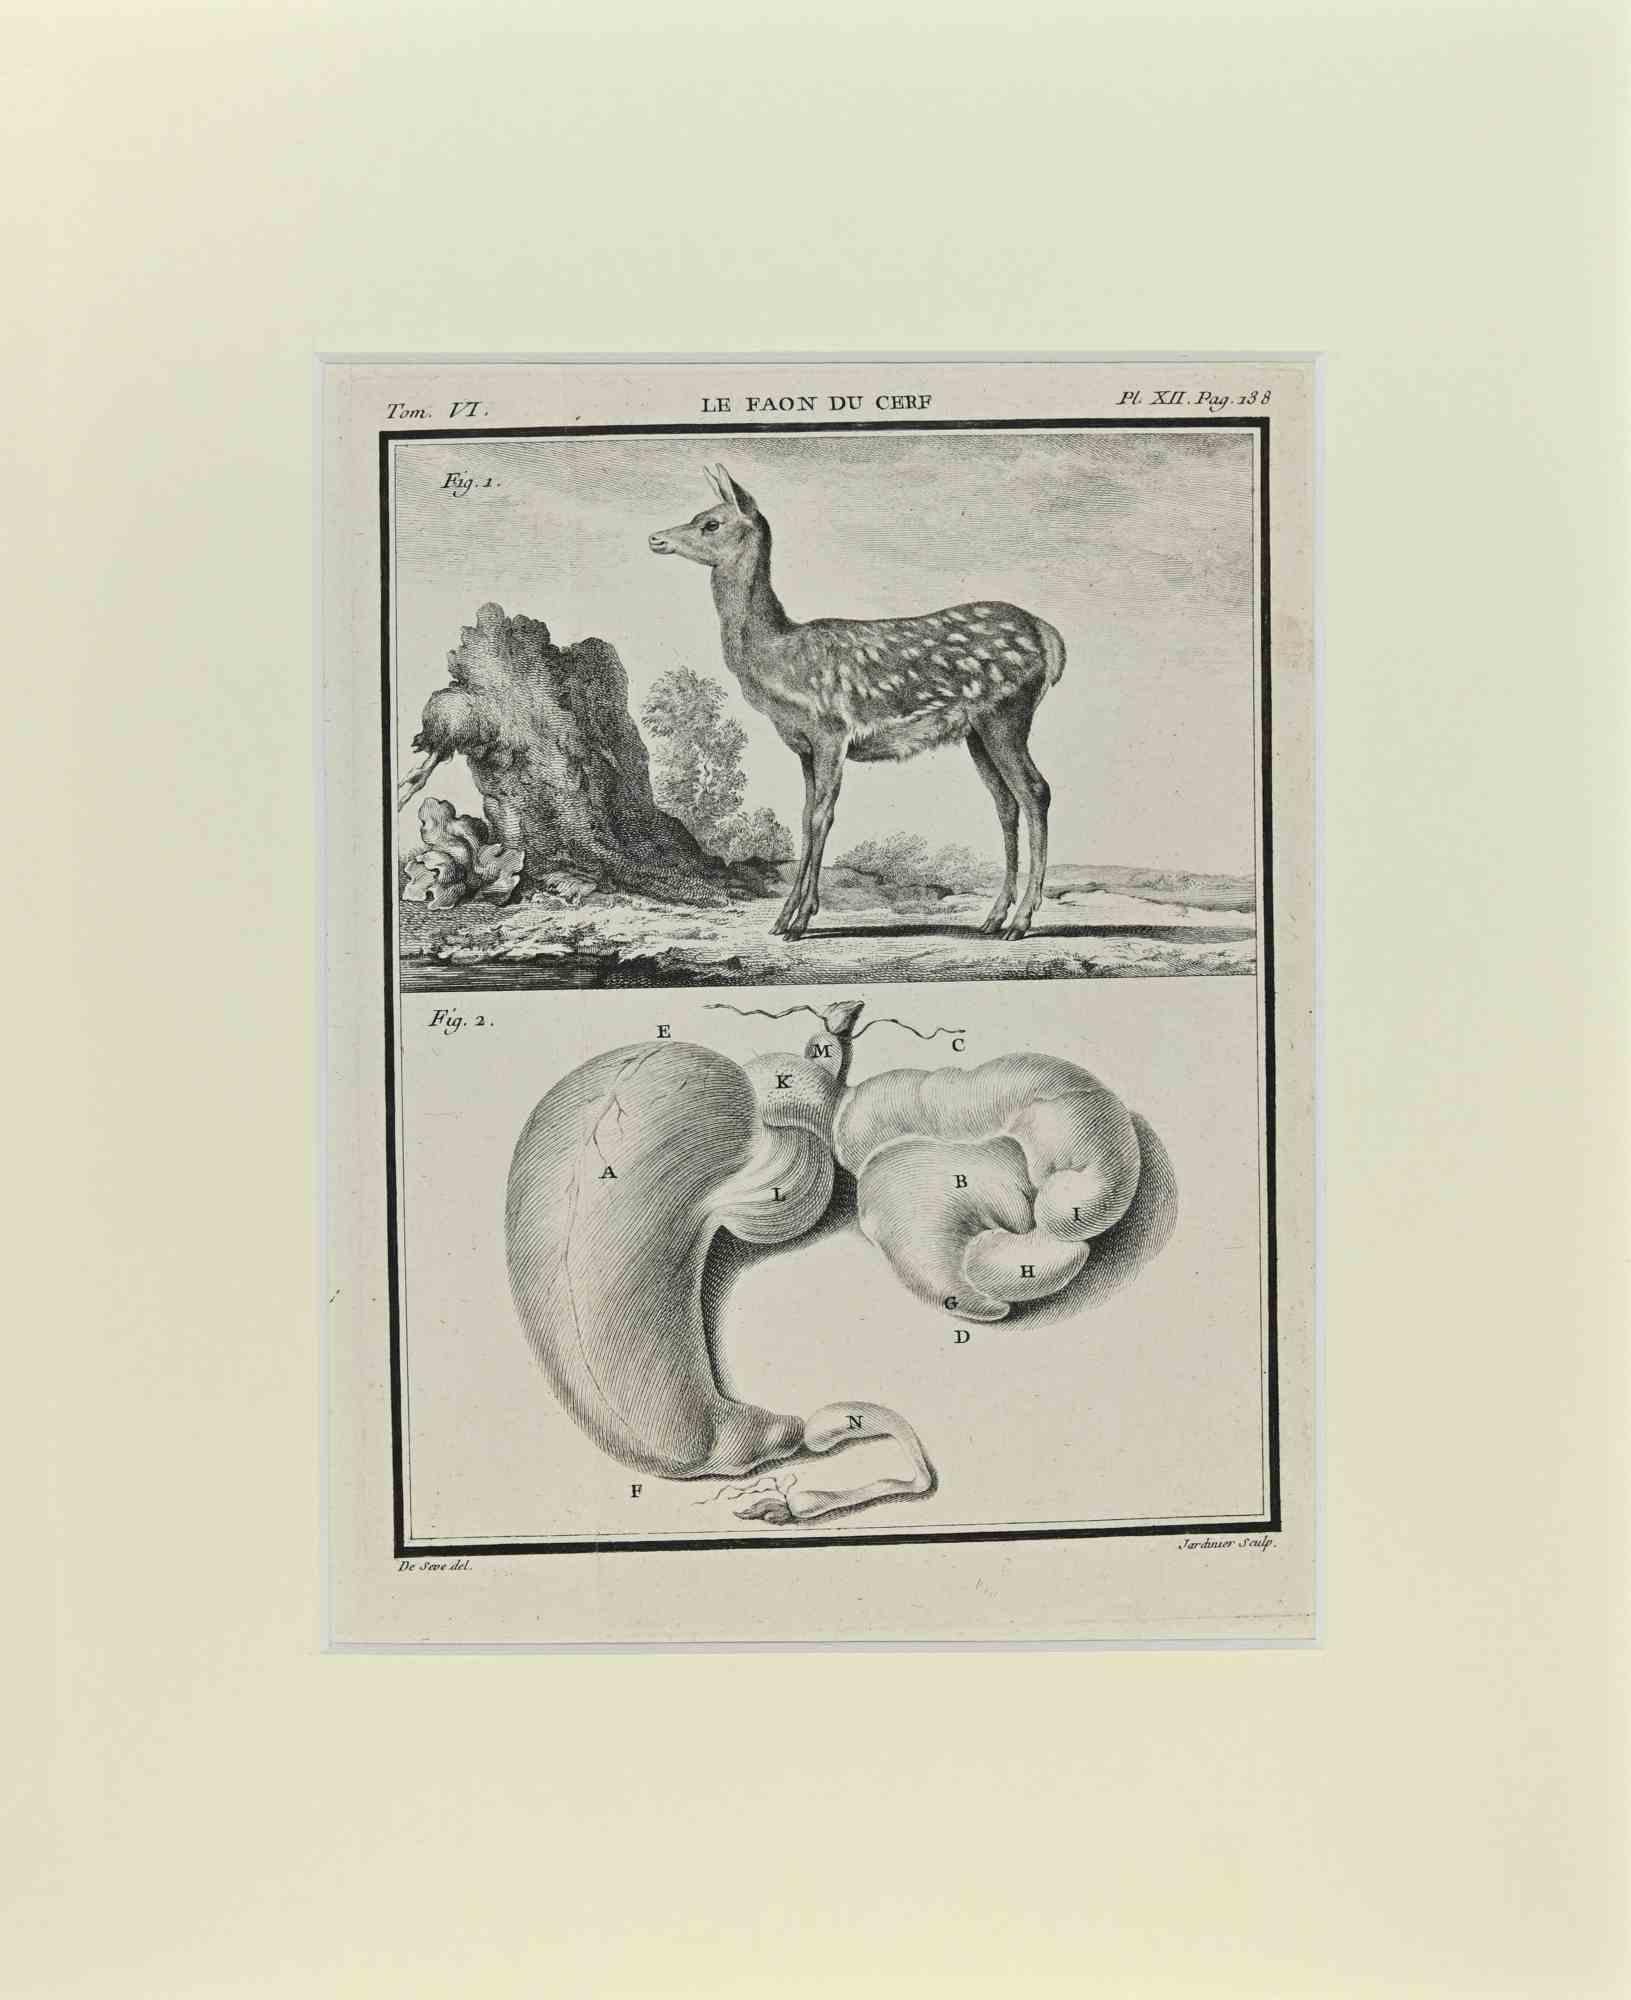 Animal Print Jacques de Seve - Le Faon du Cerf - Gravure de Jacques De Sève - 1771